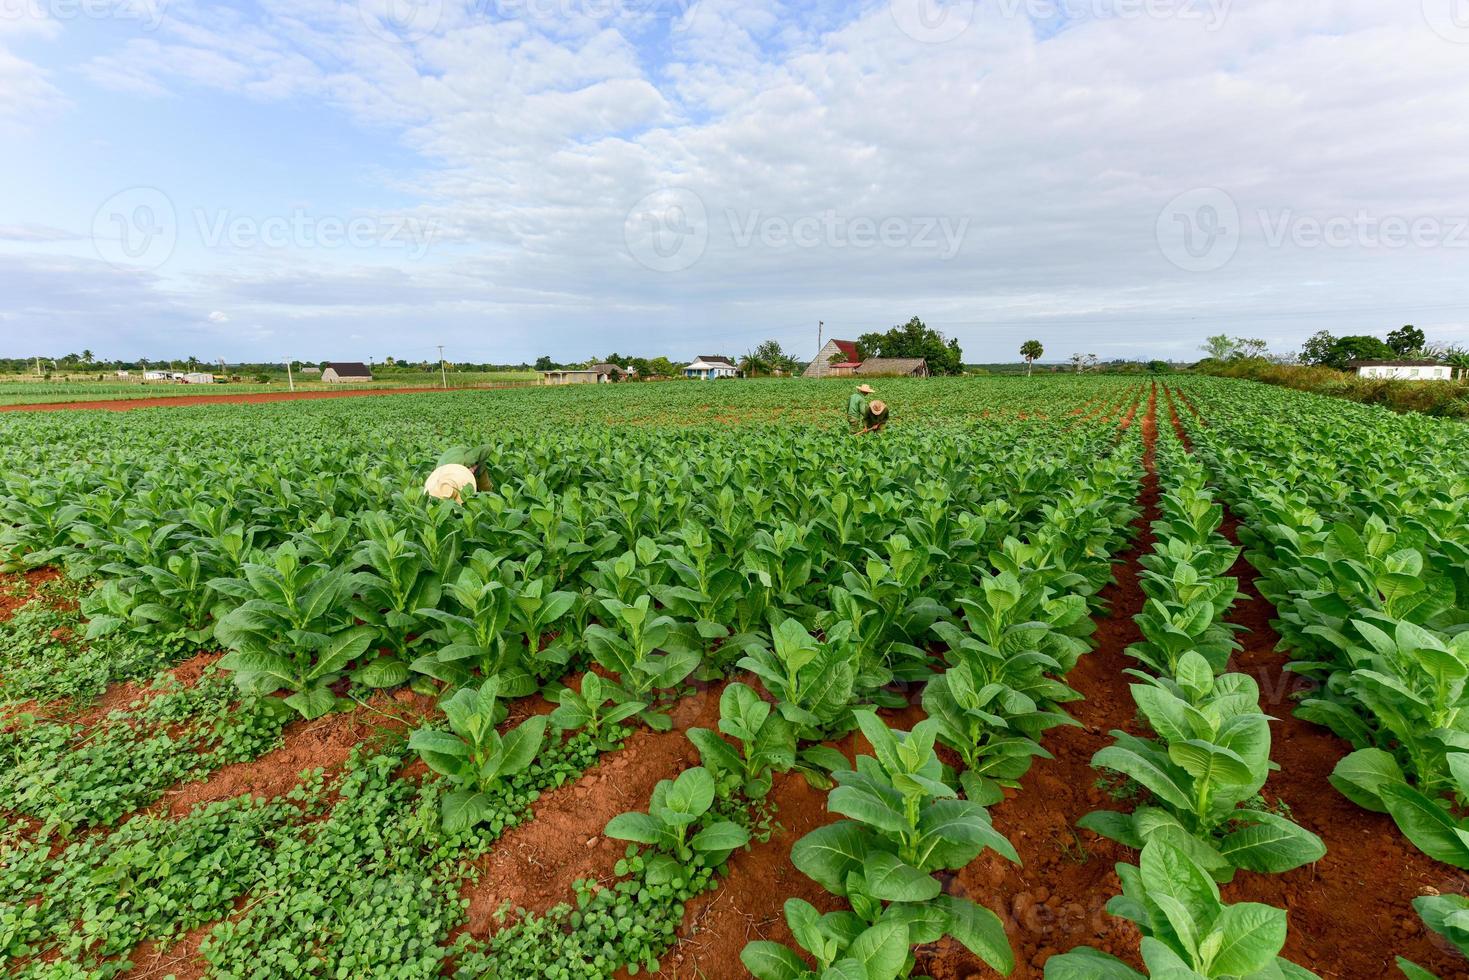 tabak veld- in de vinales vallei, noorden van Cuba. foto